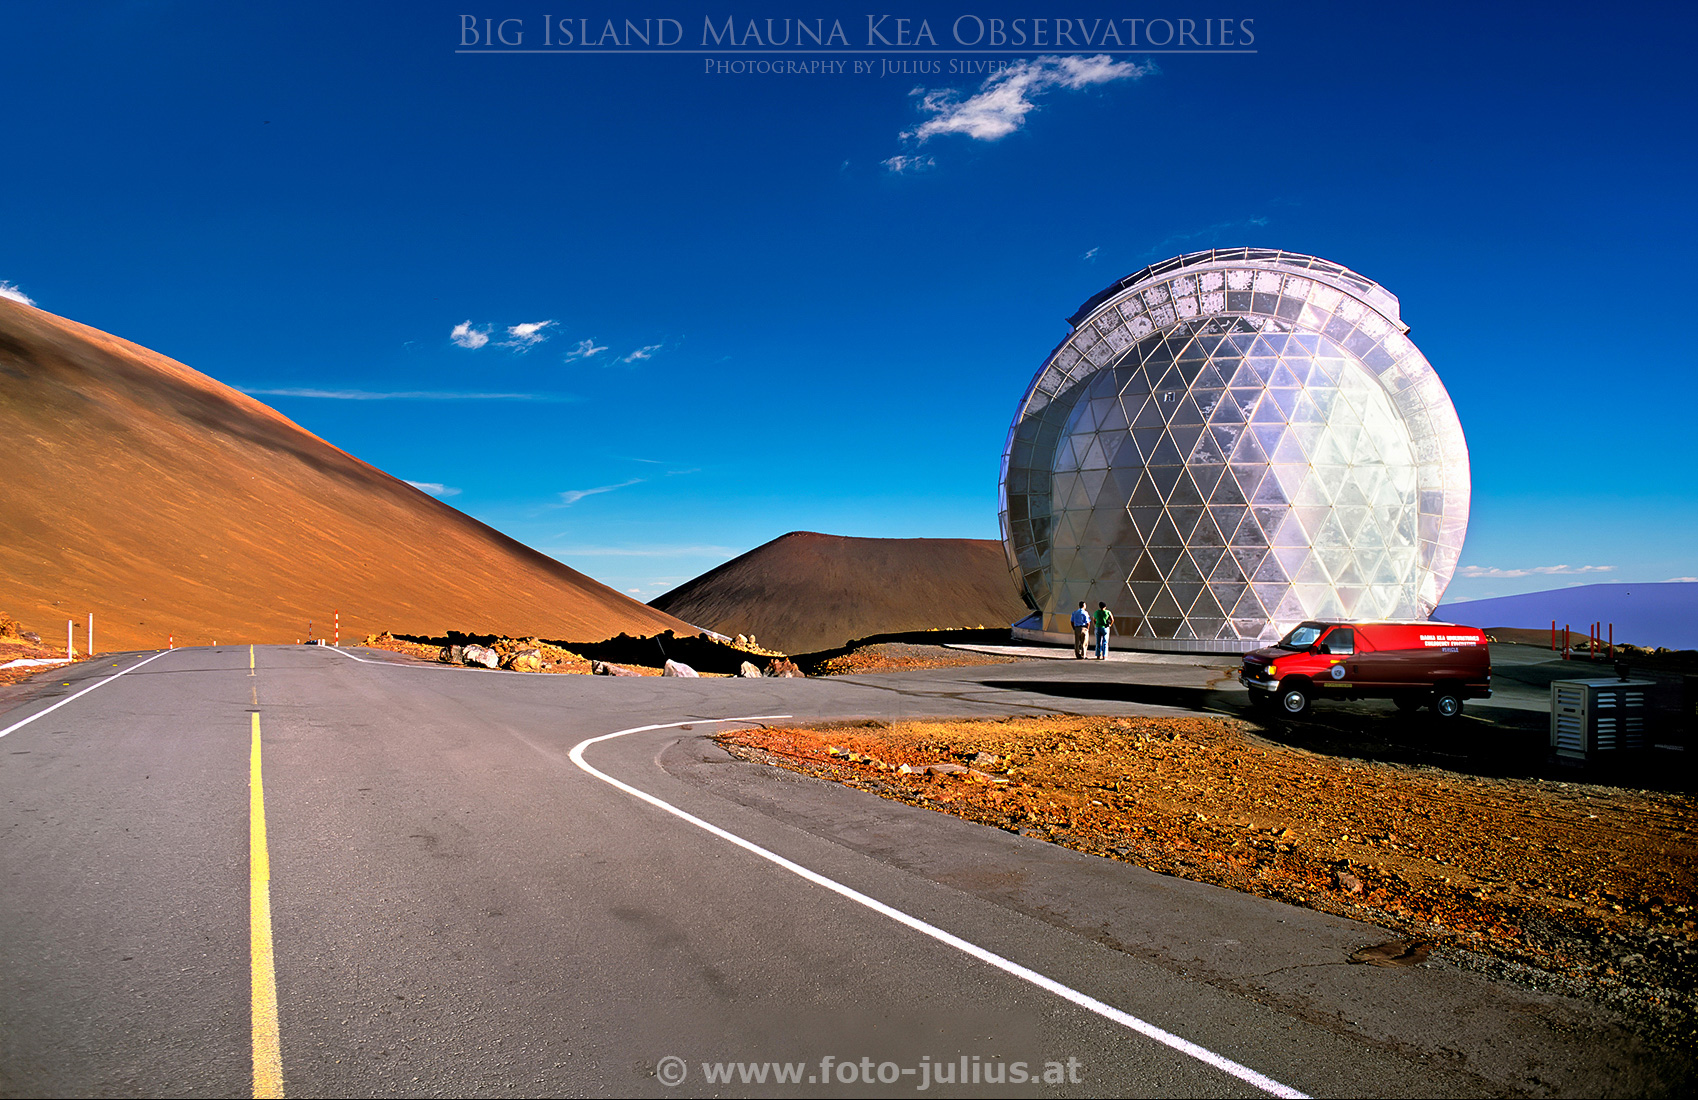 haw082a_Big_Island_Mauna_Kea_Observatories.jpg, 840kB